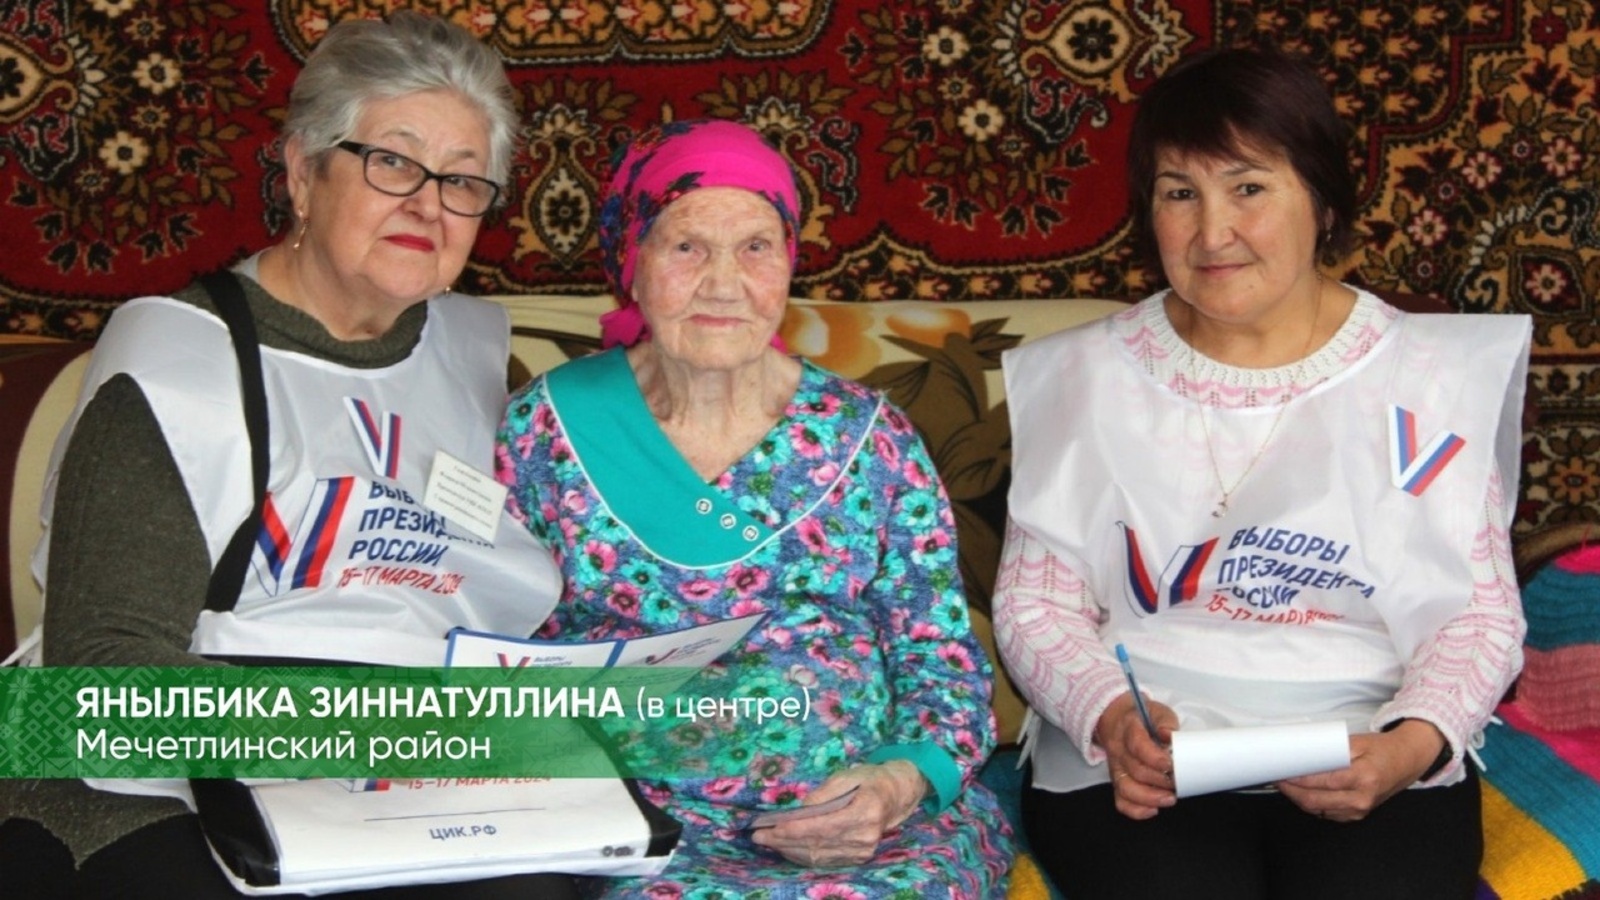 Глава Башкирии рассказал об удивительных двух женщинах с активной гражданской позицией